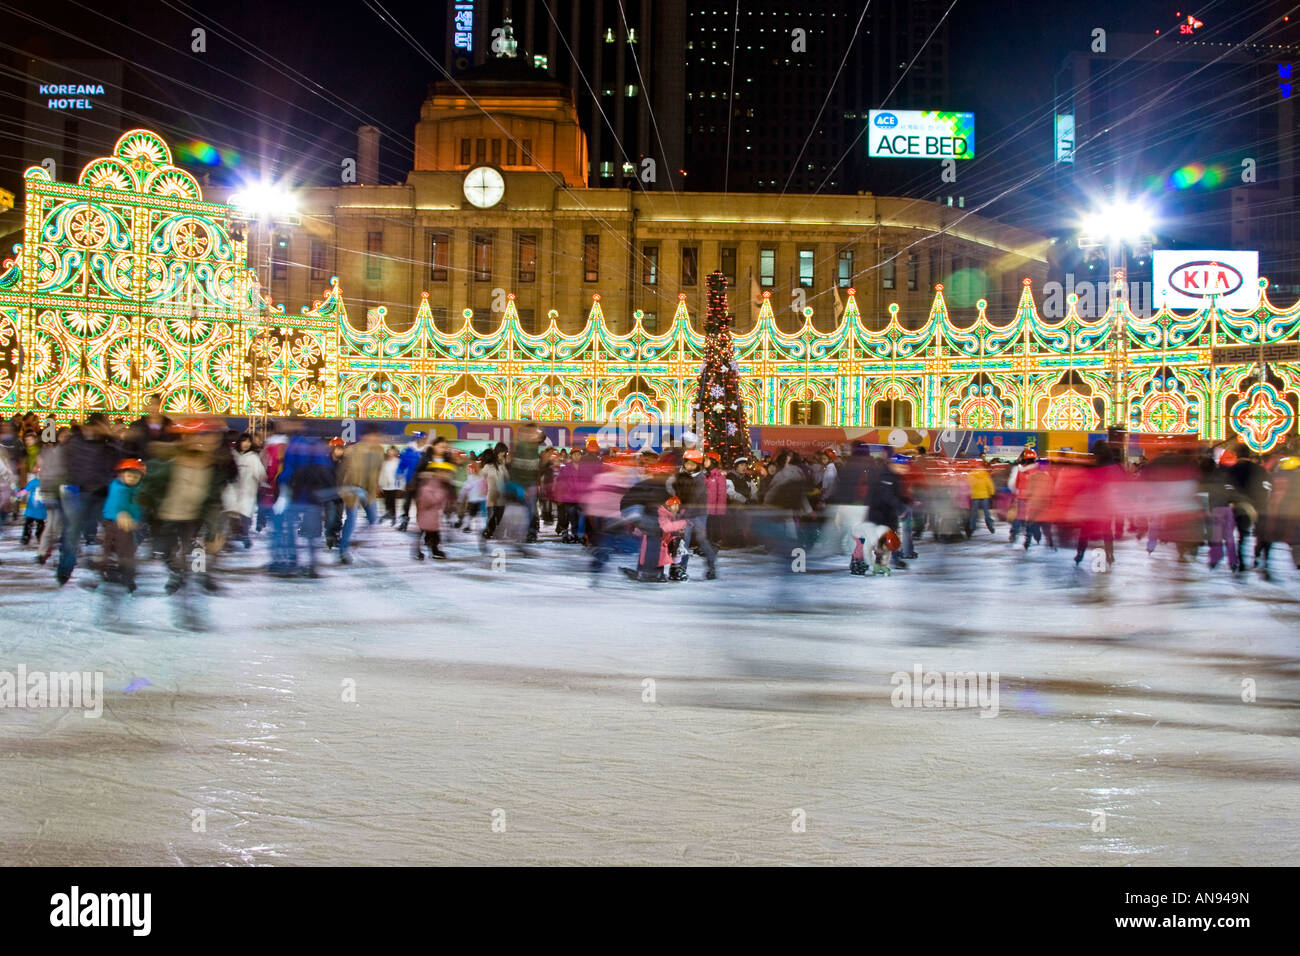 Koreanische Leute Eislaufen auf einer Eisbahn vor Rathaus Seoul Südkorea Stockfoto